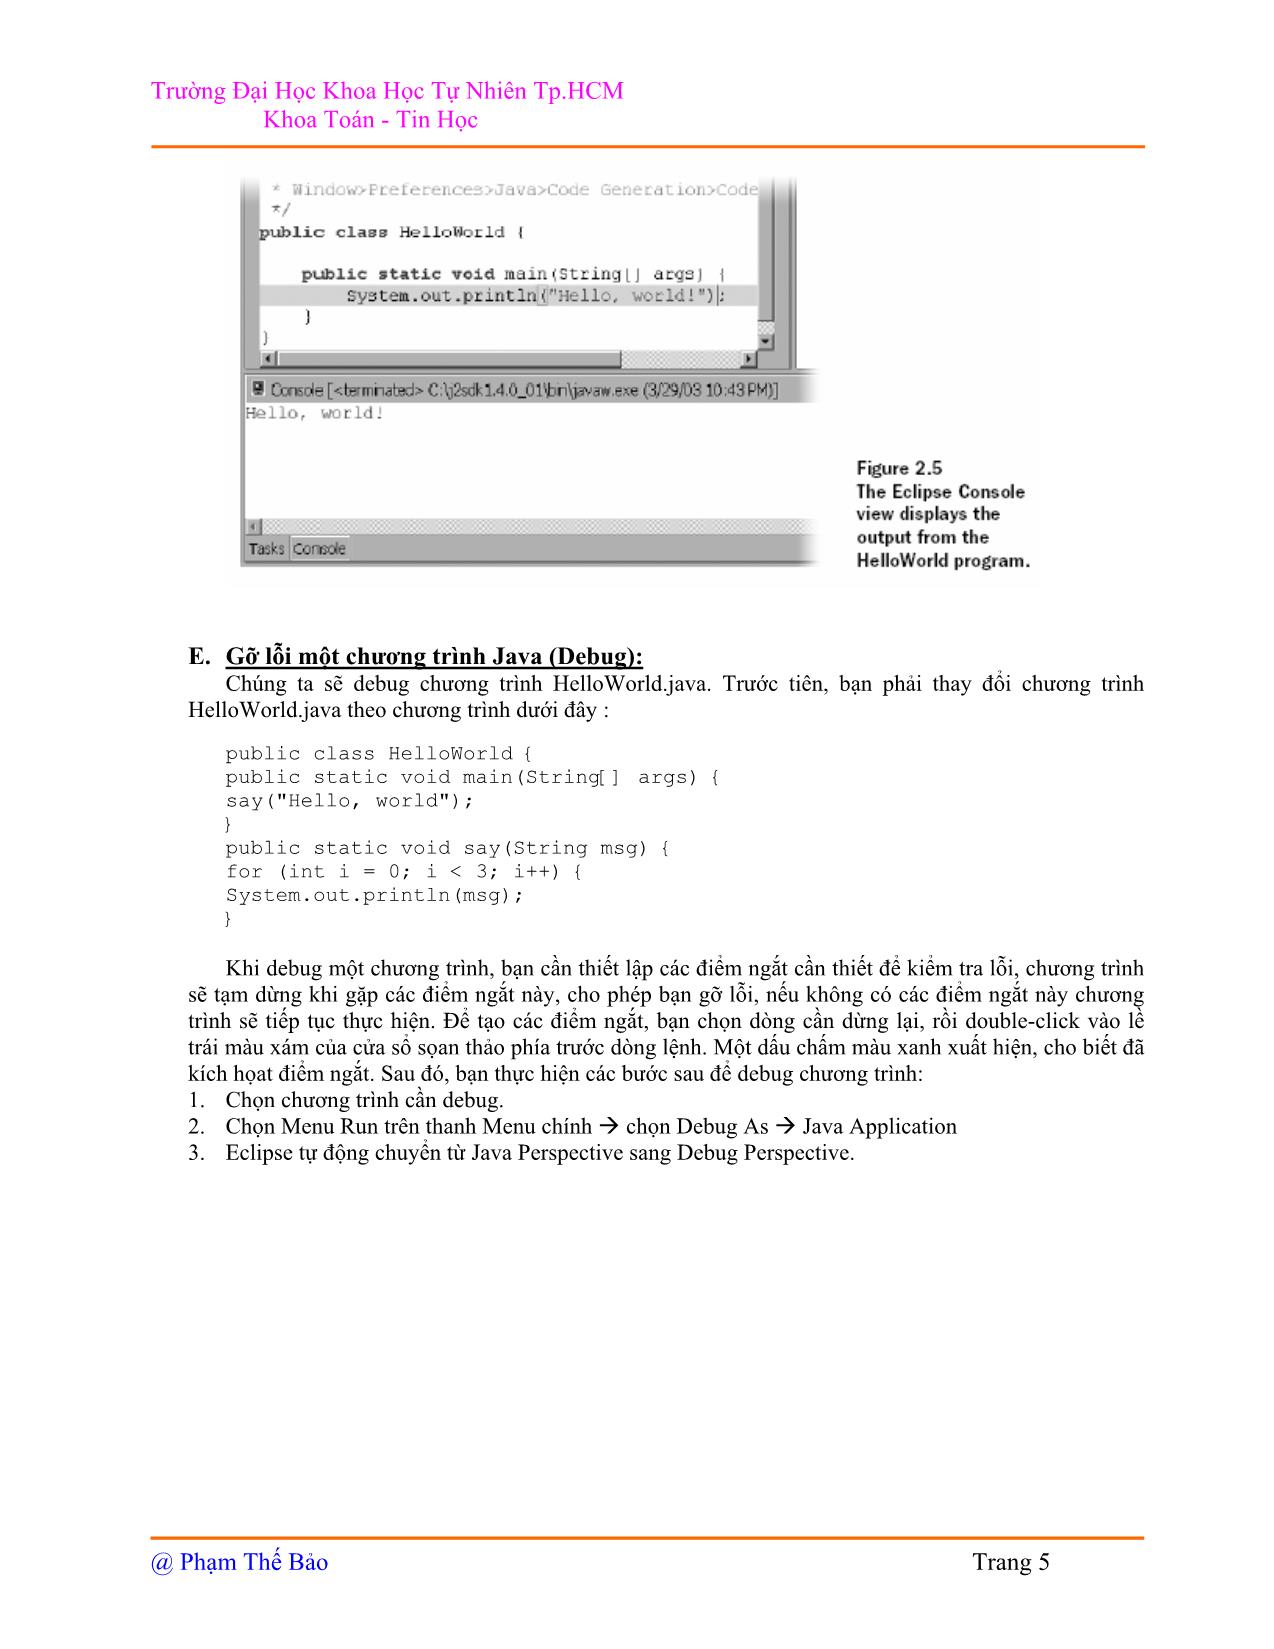 Java IDE trang 5